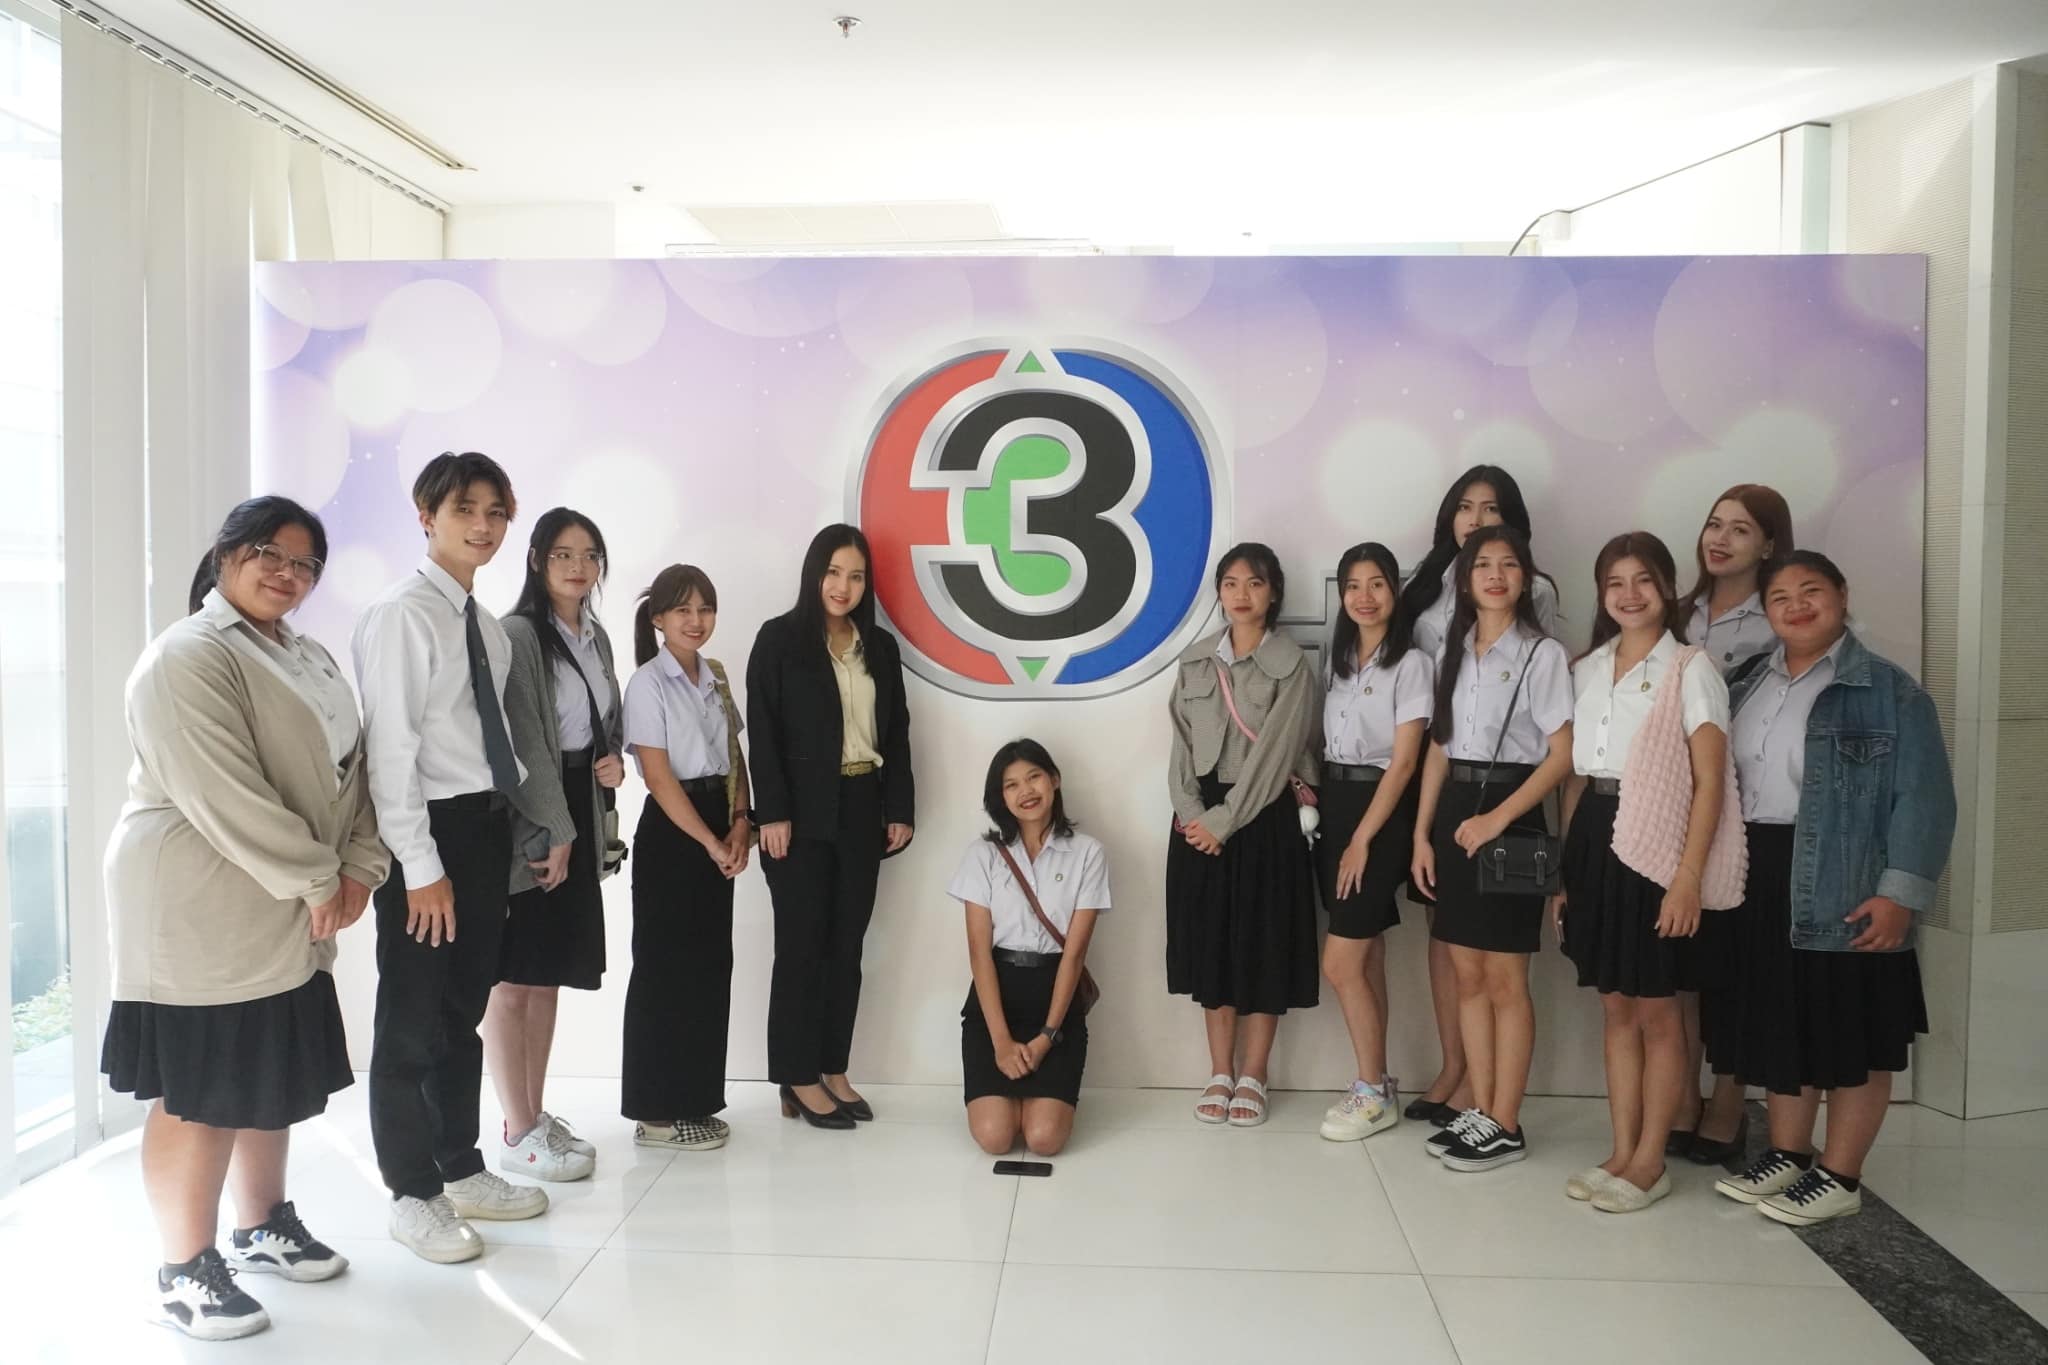 นักศึกษาสาขาวิชานิเทศศาสตร์ คณะบริหารธุรกิจและการจัดการ  ใหาวิทยาลัยราชภัฏอุบลราชธานี  ศึกษาดูงาน ณ สถานีโทรทัศน์ไทยทีวีสีช่อง 3 อาคารมาลีนนท์ กรุงเทพมหานคร  ในรายการข่าวสามสี 28 กุมภาพันธ์ 2567 